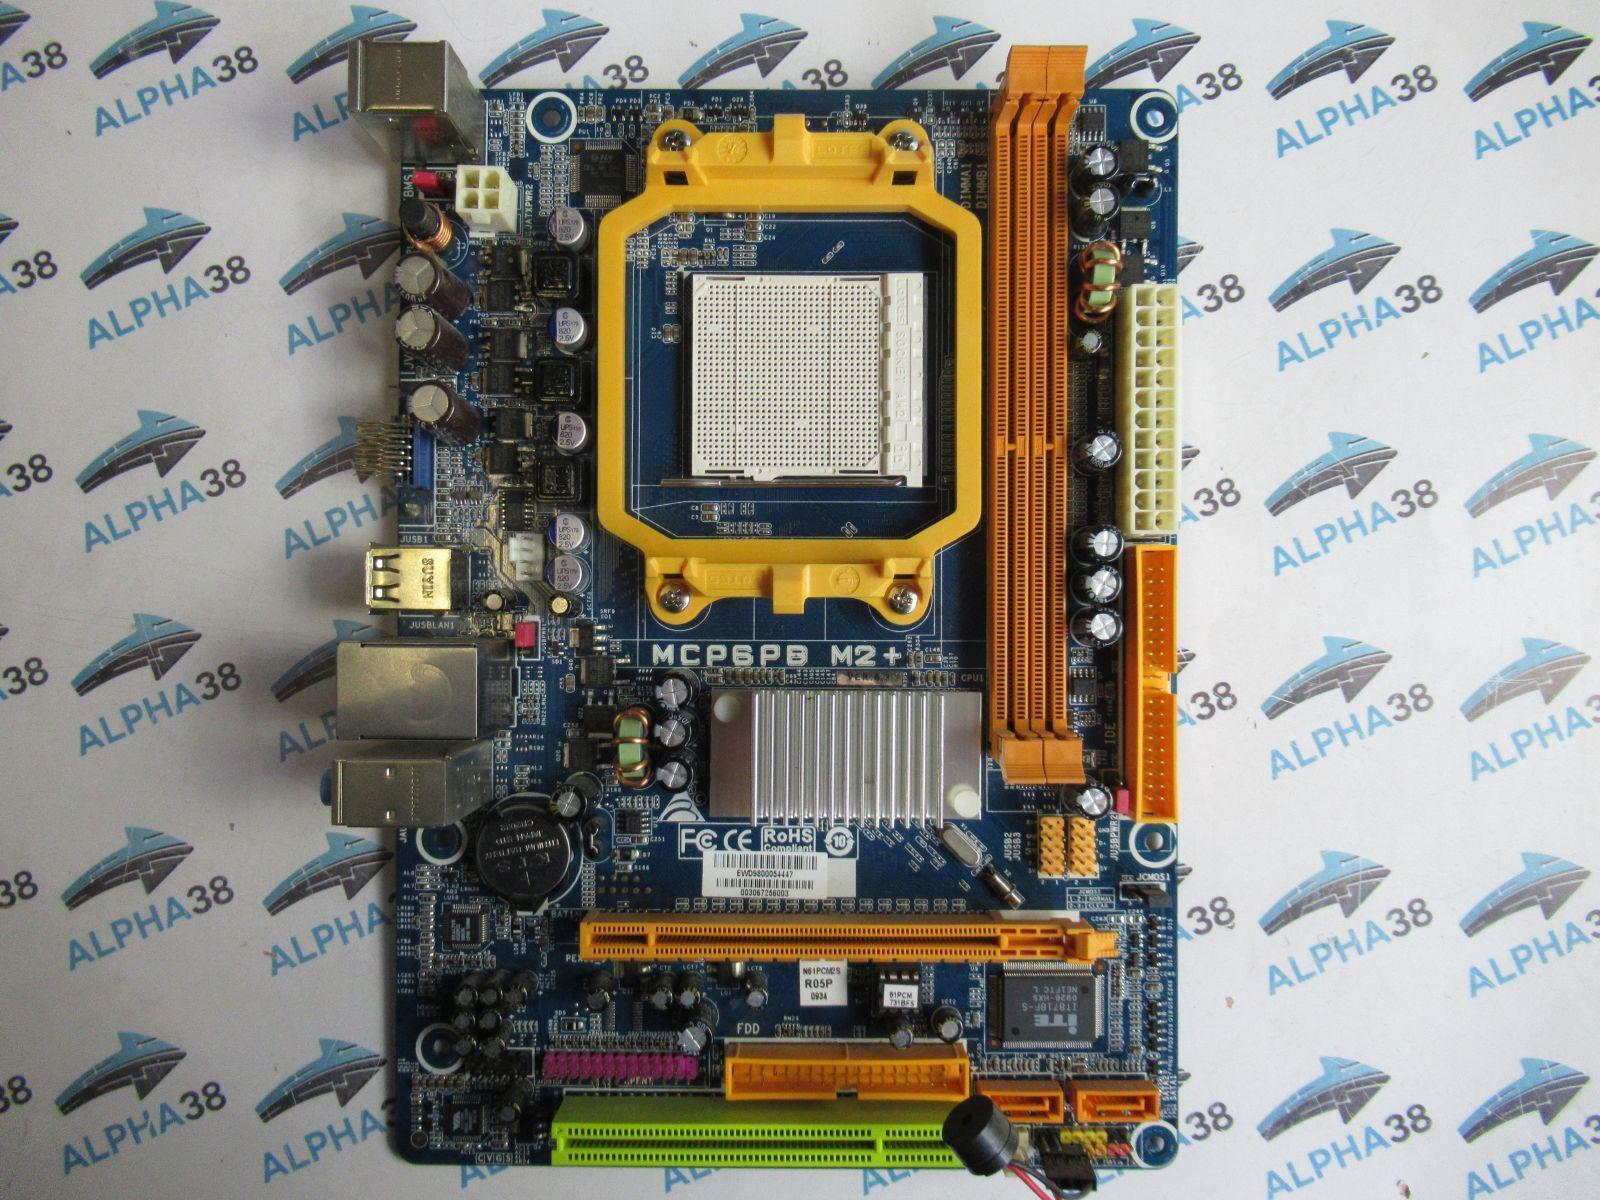 Biostar Mcp6pb M2 +6.3 Nvidia nforce430a 2x DDR2 RAM AM2 + Micro ATX Motherboard